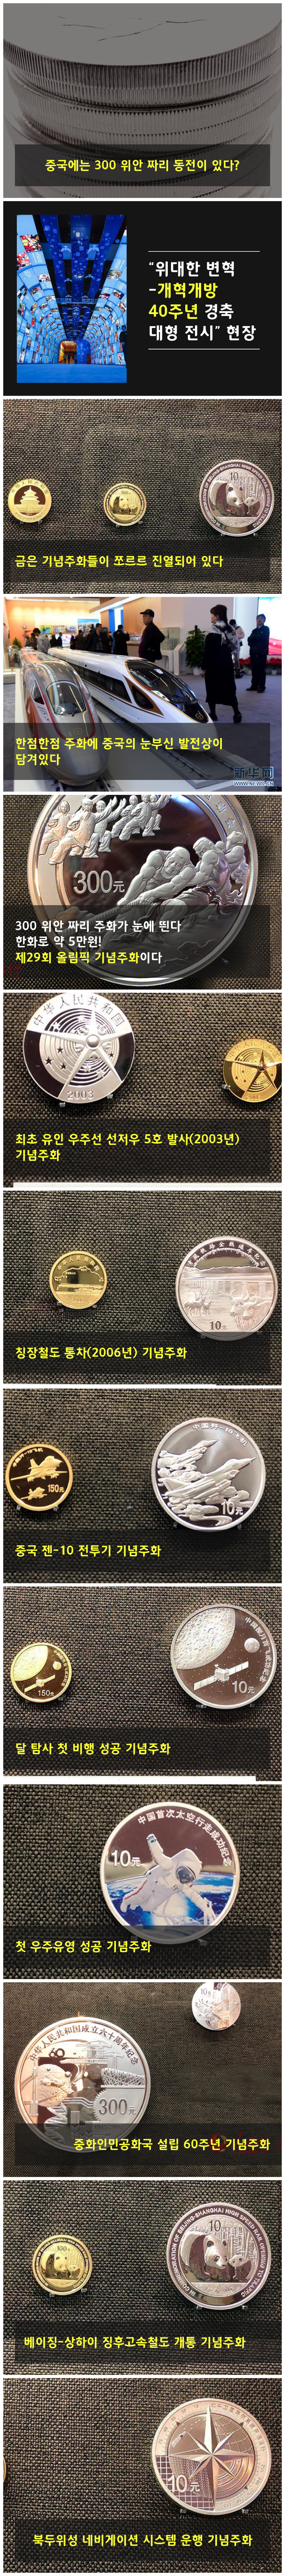 중국에는 300원 짜리 동전이 있다?